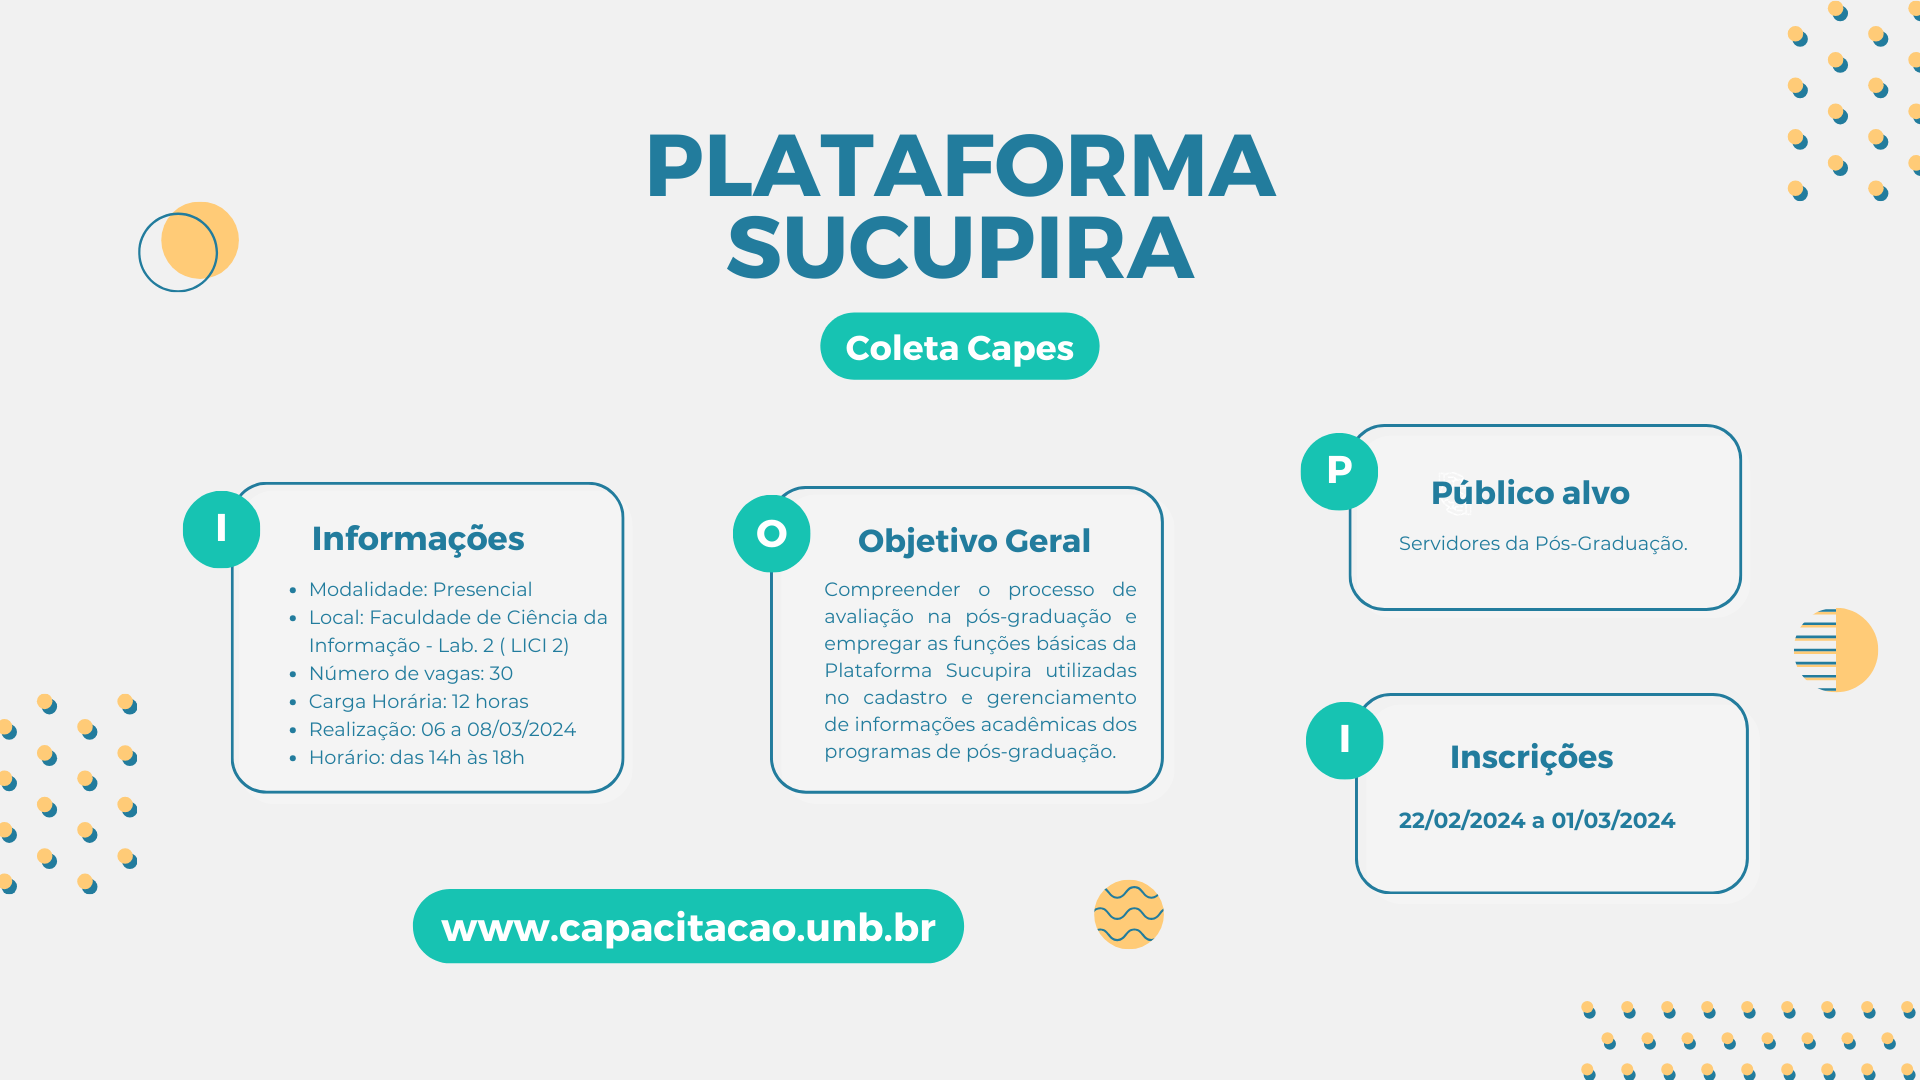 Plataforma Sucupira / Coleta Capes